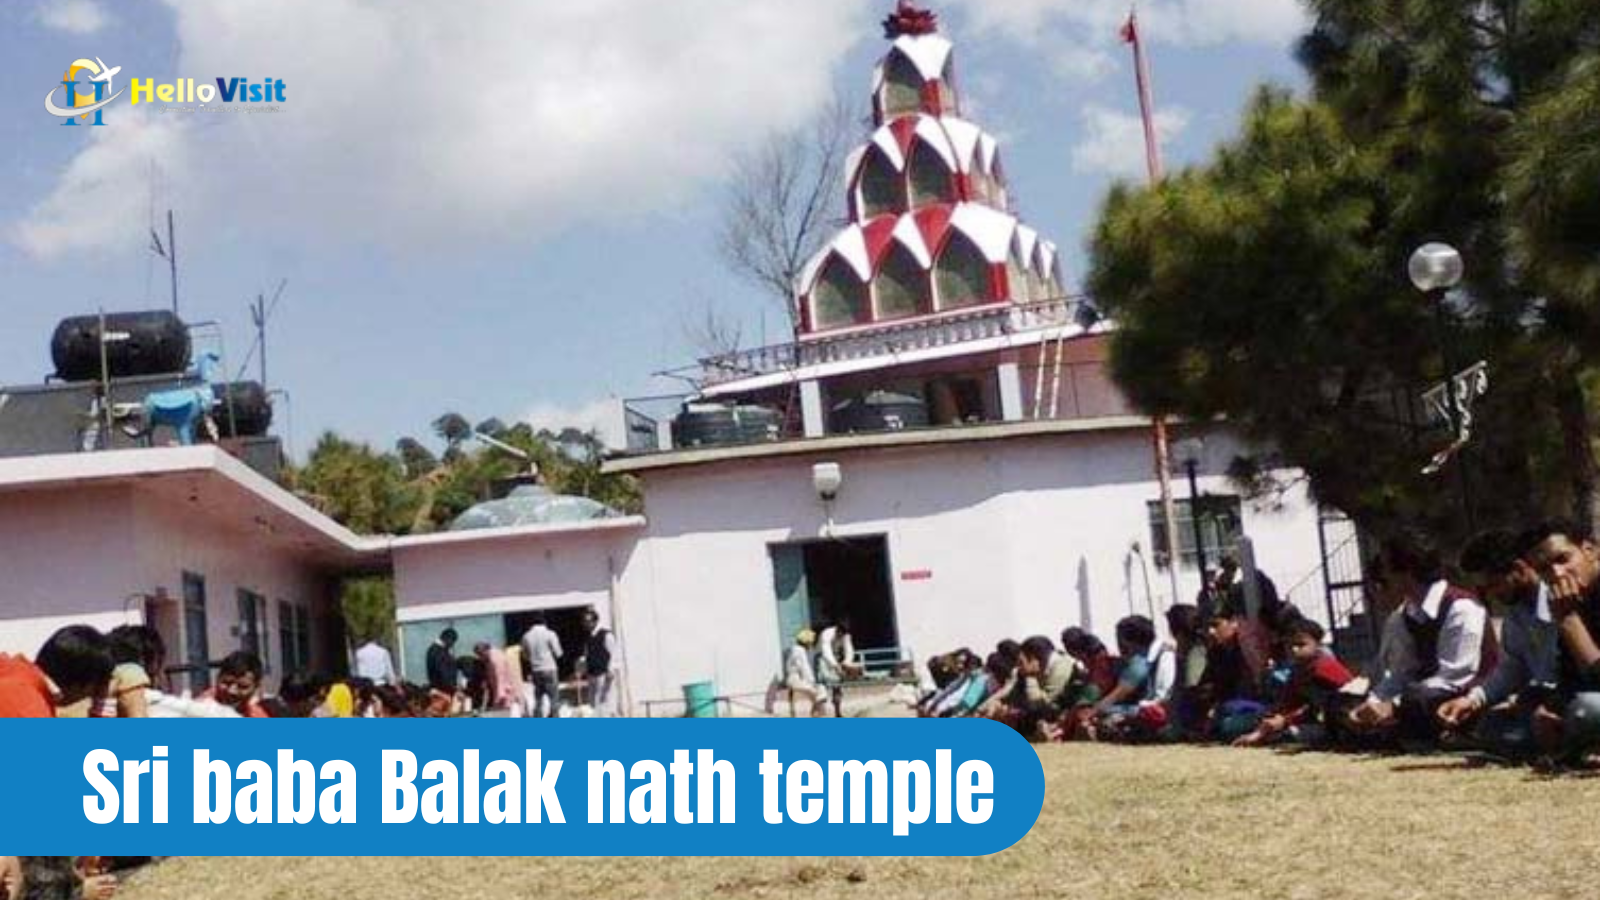 Sri baba Balak nath temple, Kasauli